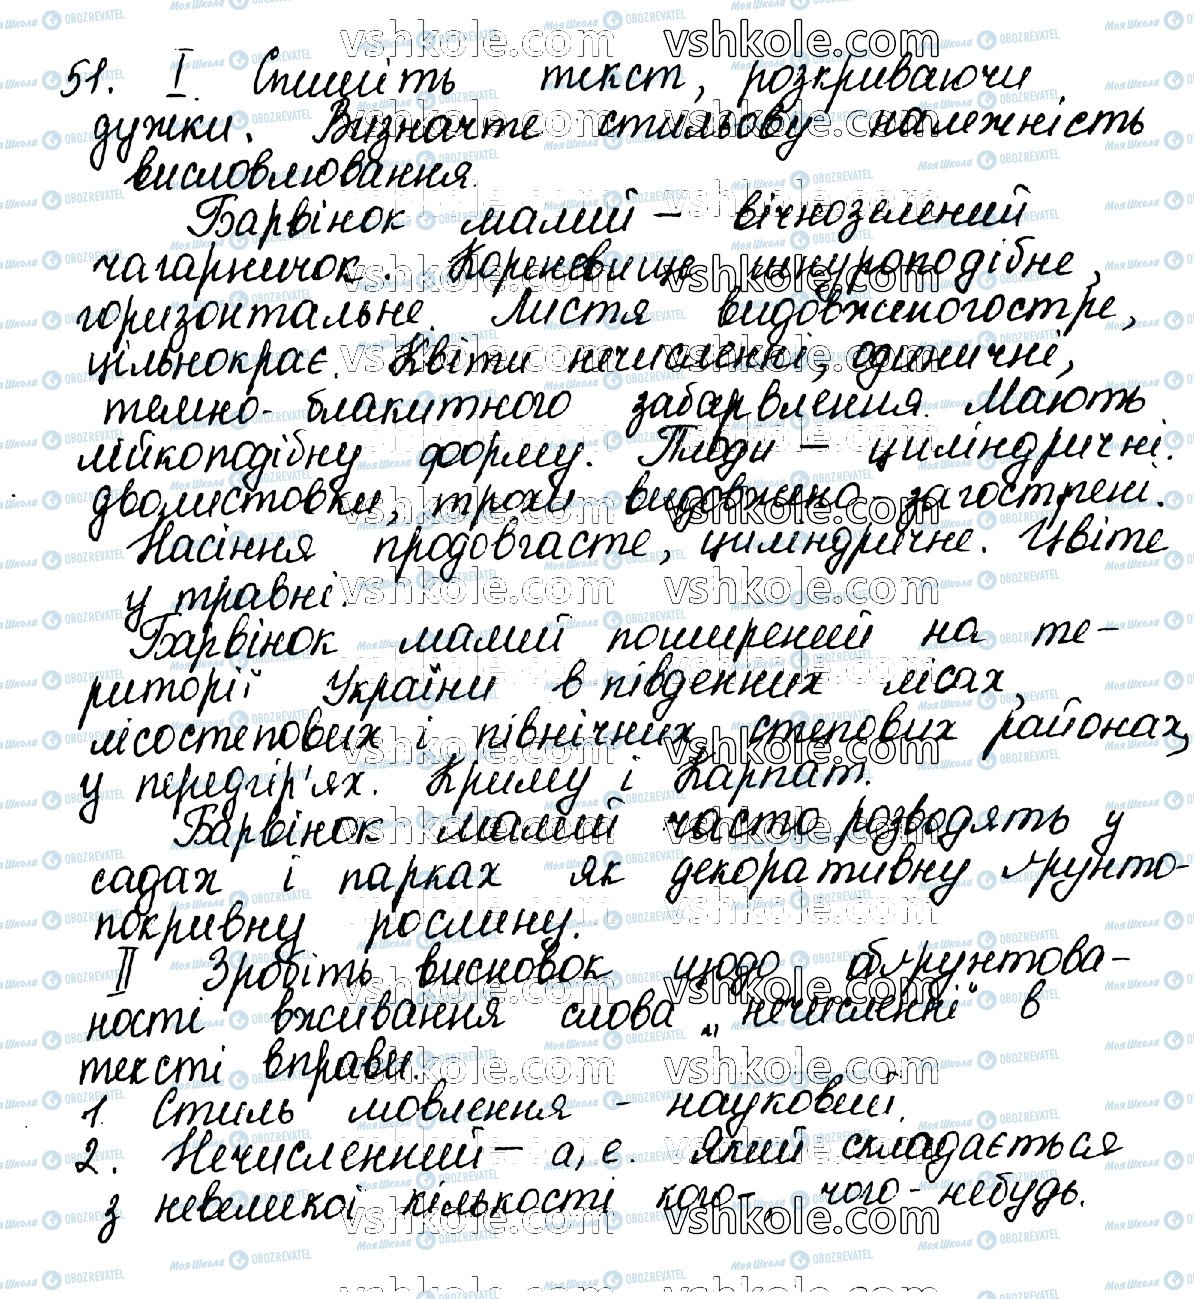 ГДЗ Українська мова 10 клас сторінка 51